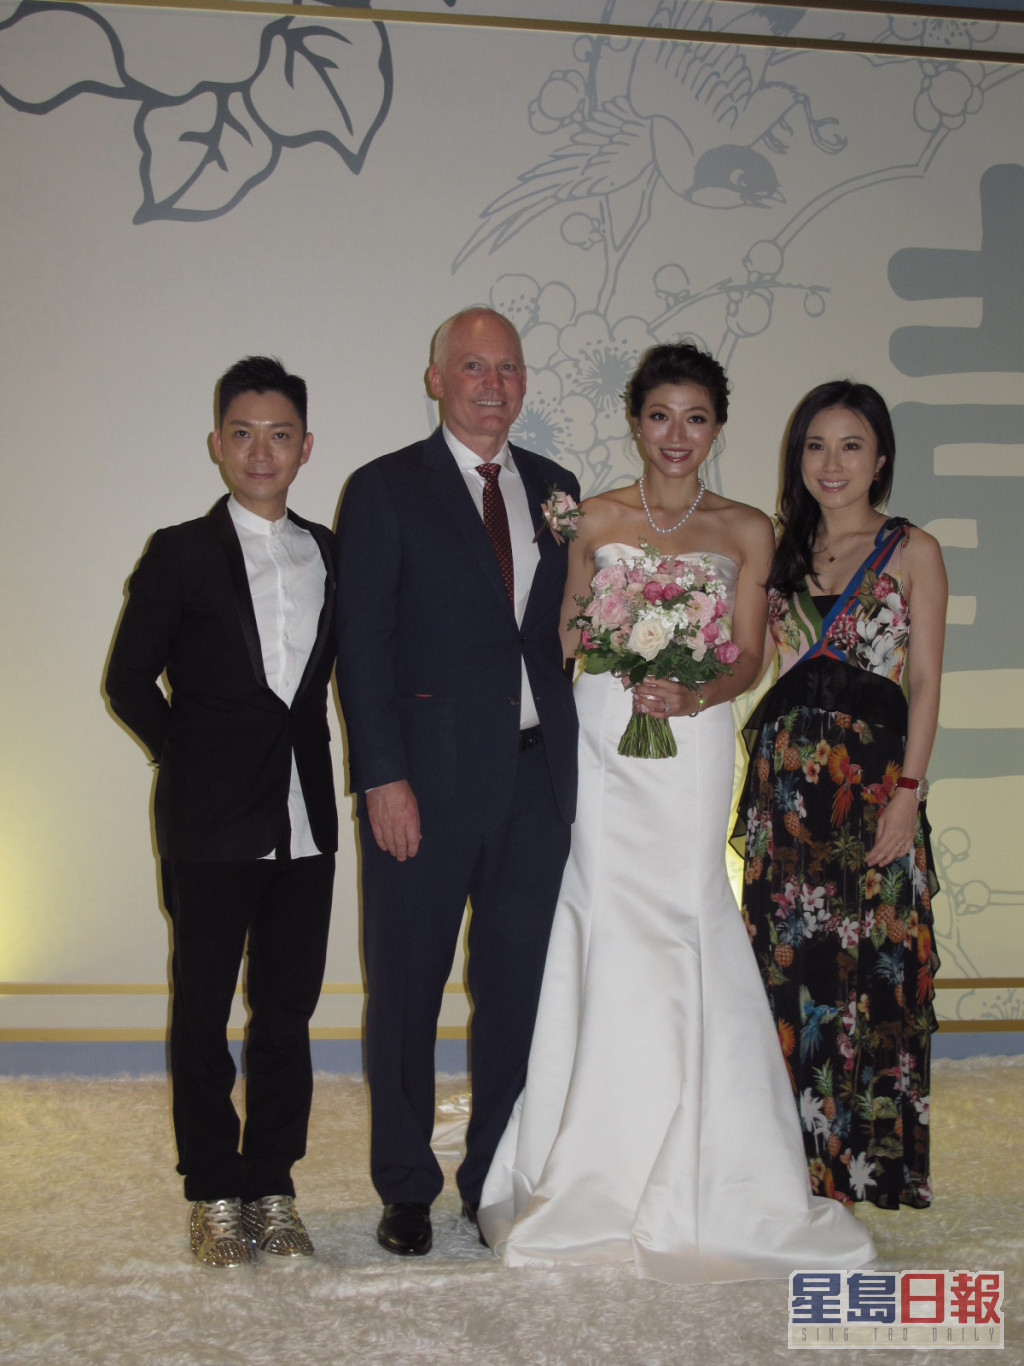 李姿敏2017年嫁給澳洲籍練馬師賀賢。